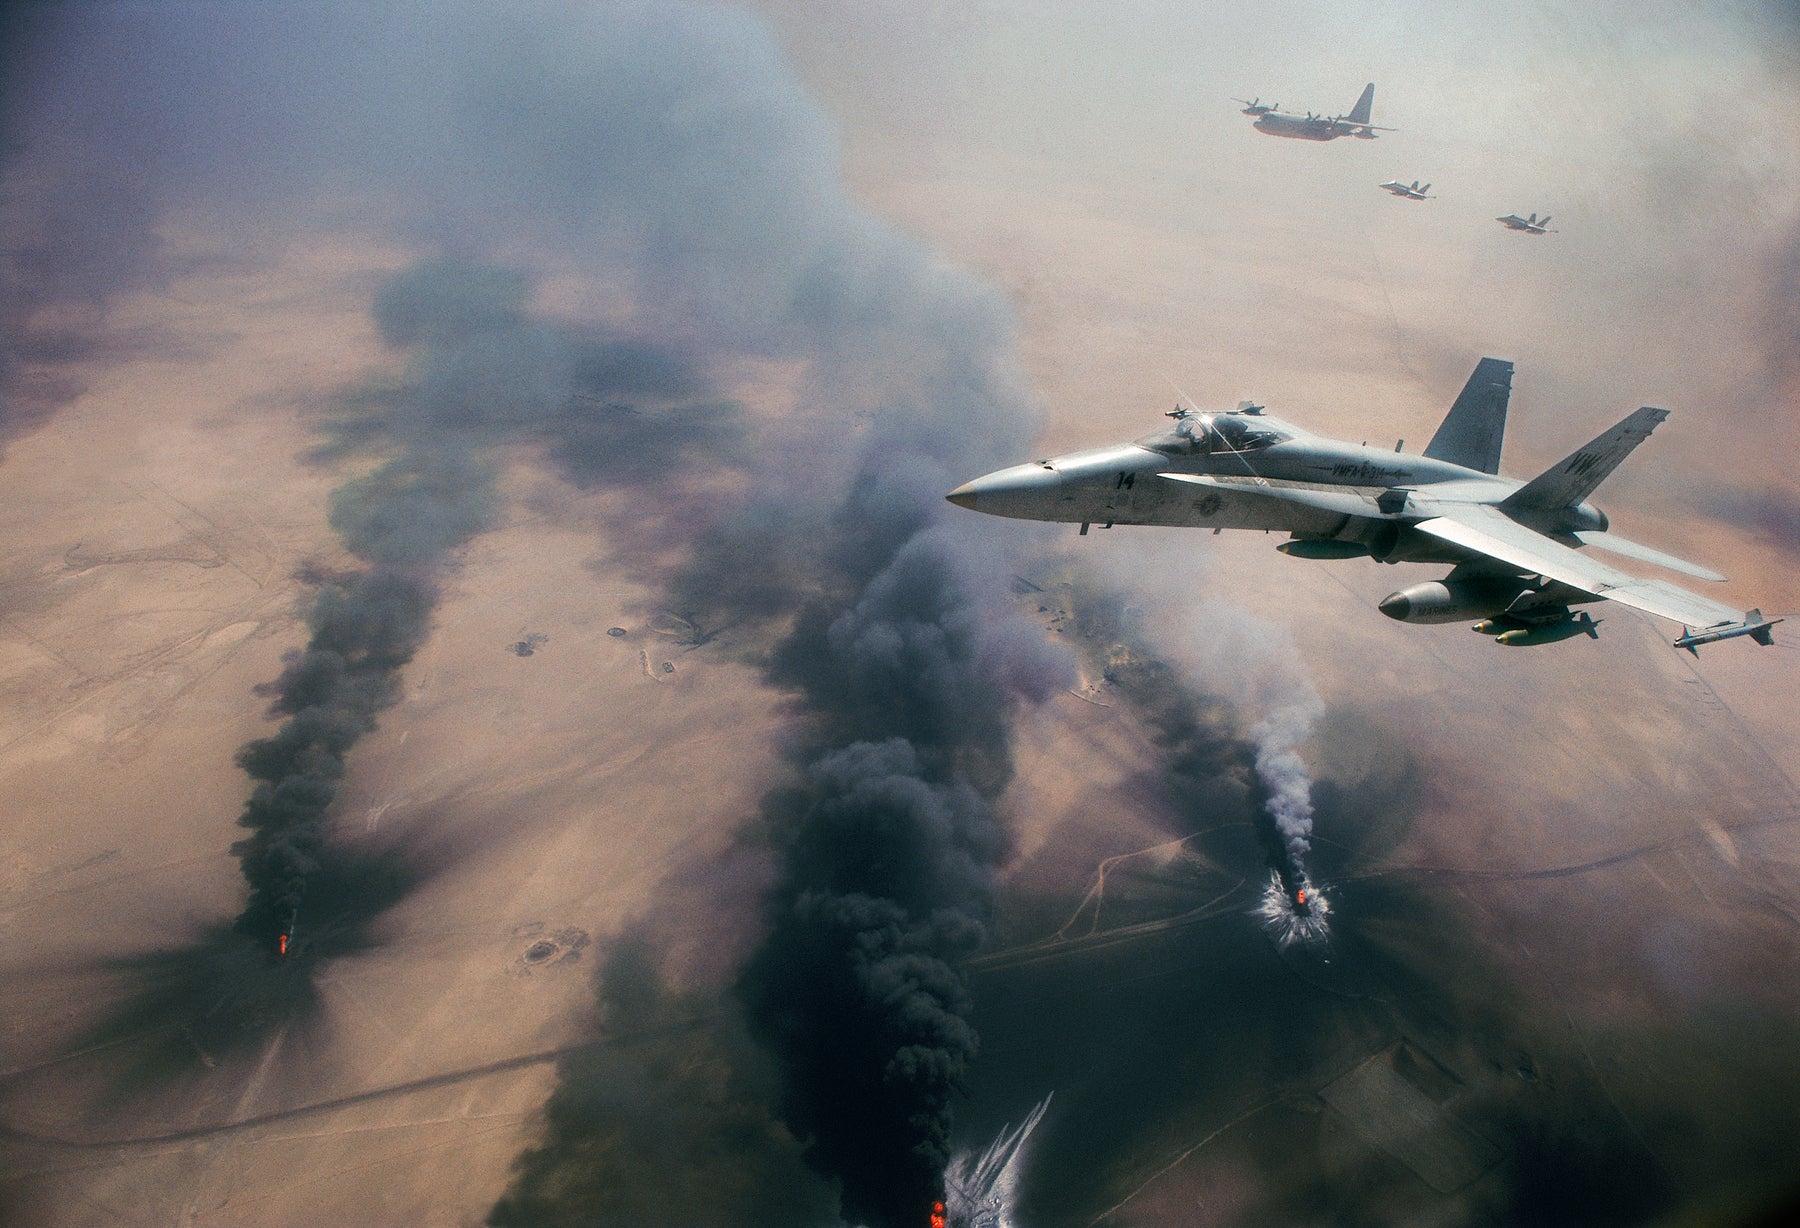 Marine F-18s Over Burning Oil Fields